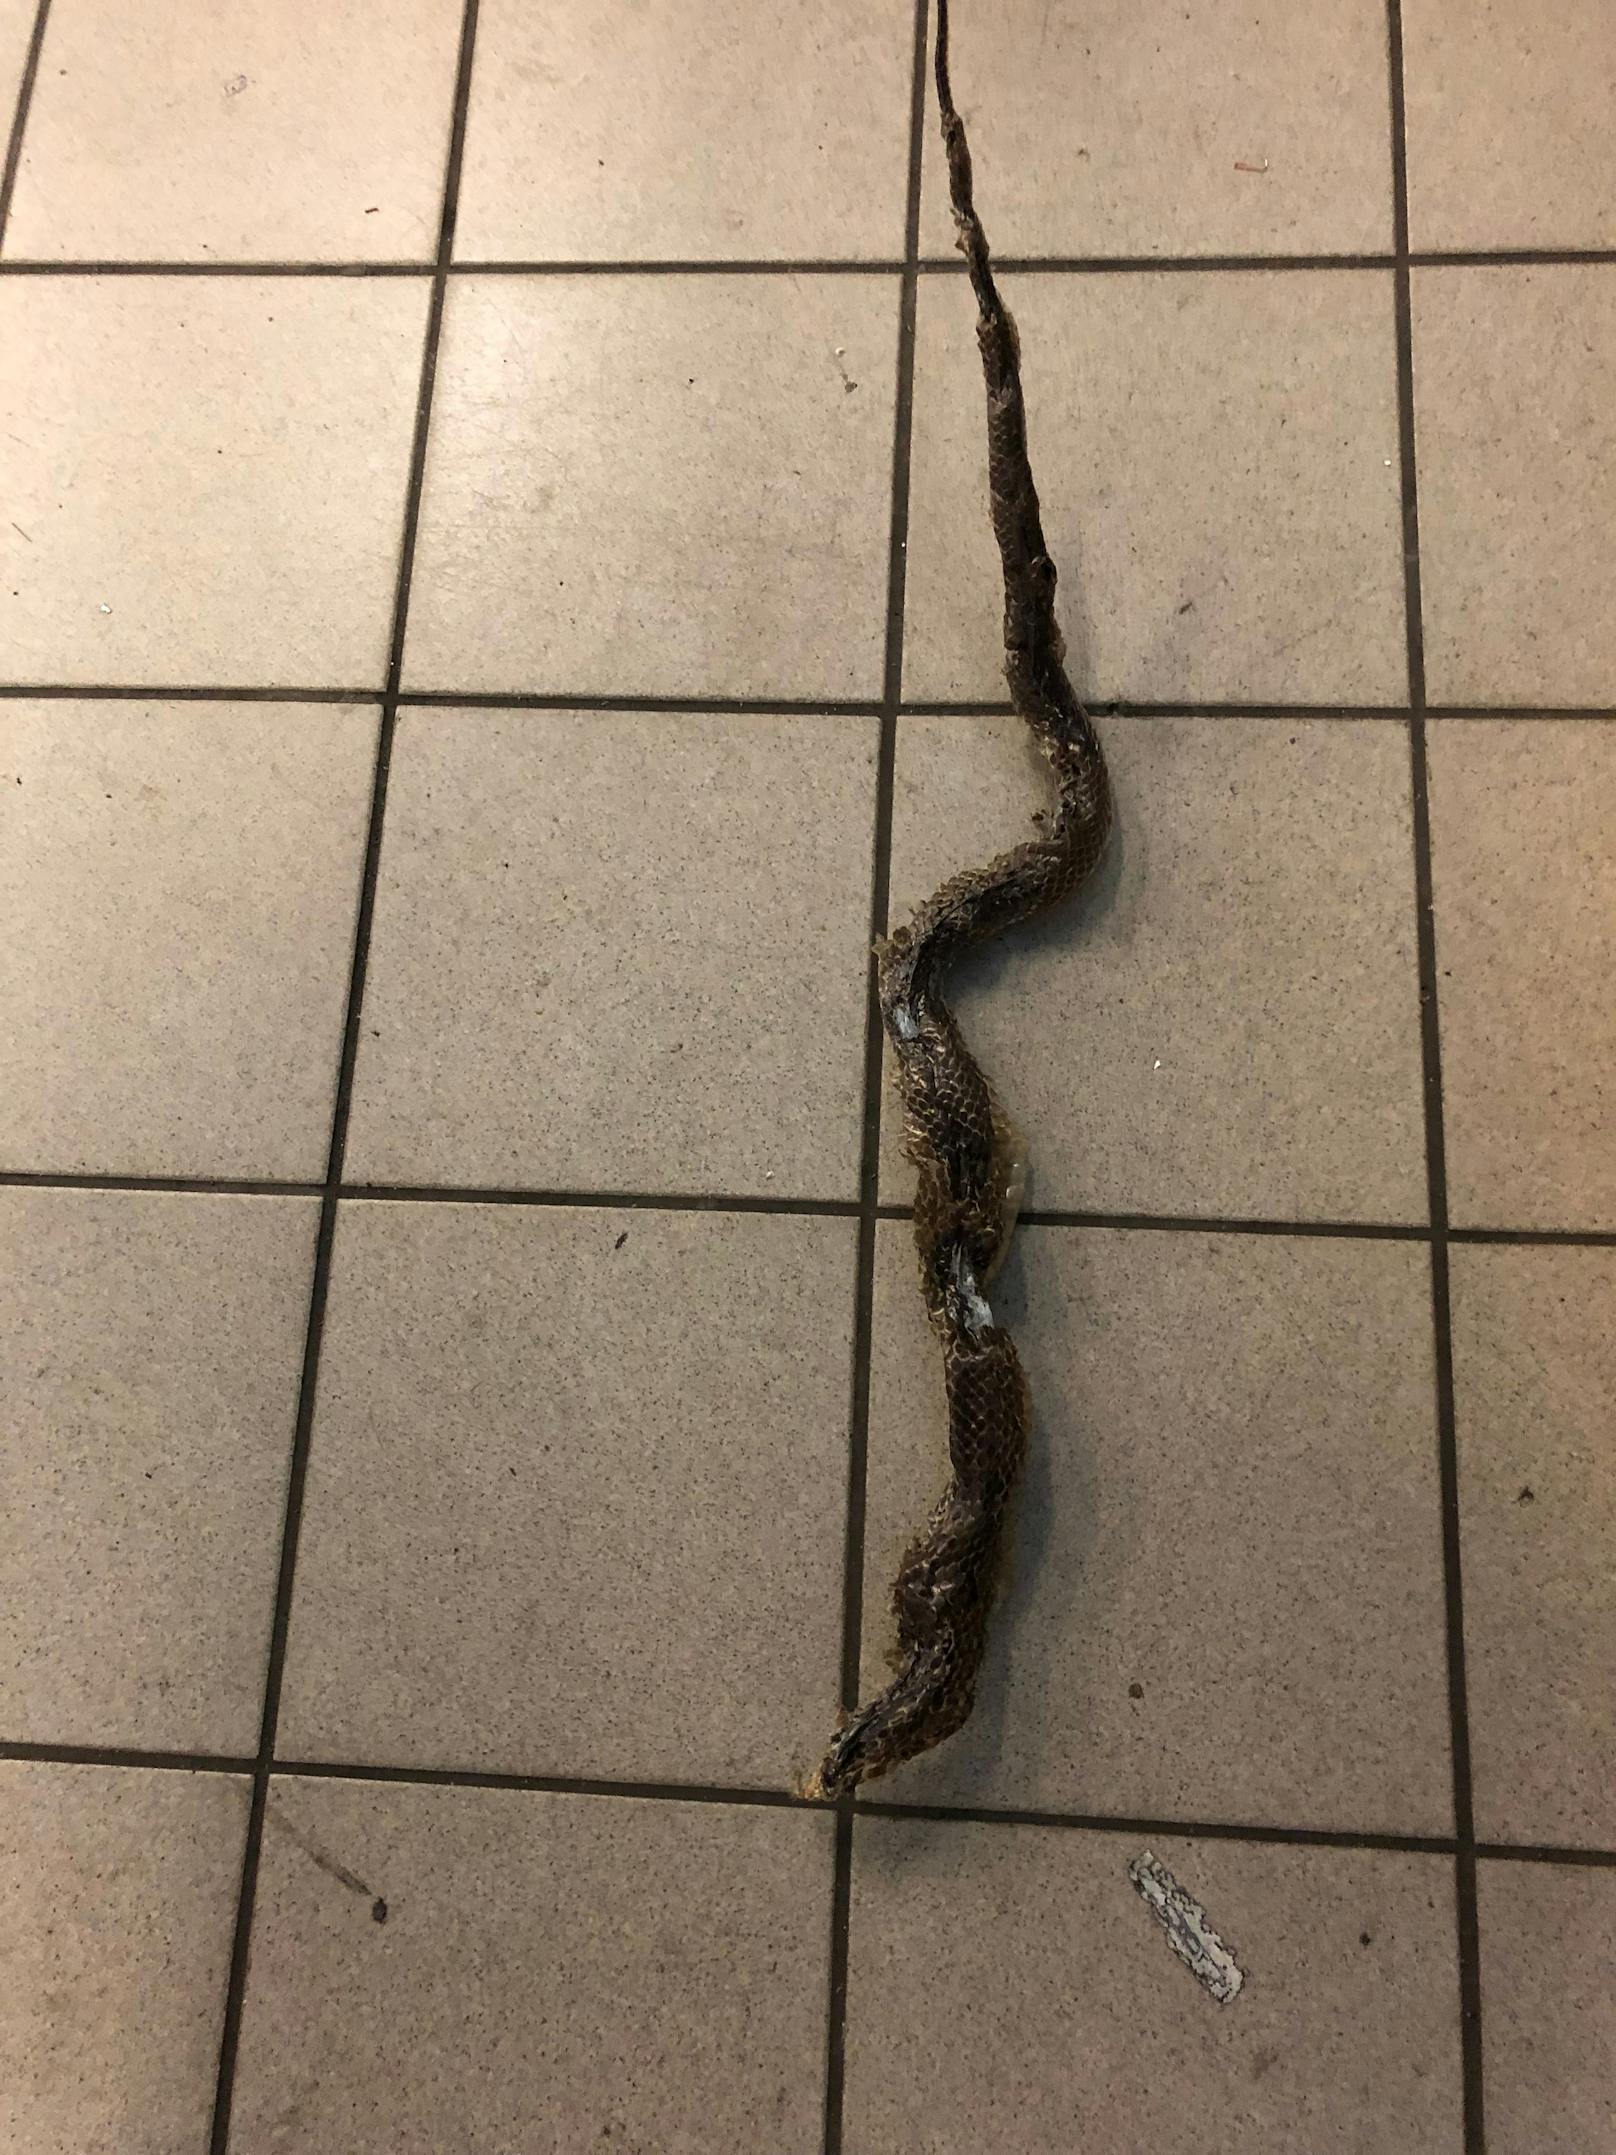 Entdeckt wurde das tote Reptil bei einer Auto-Überprüfung an einem ÖAMTC-Stützpunkt in Wien. 